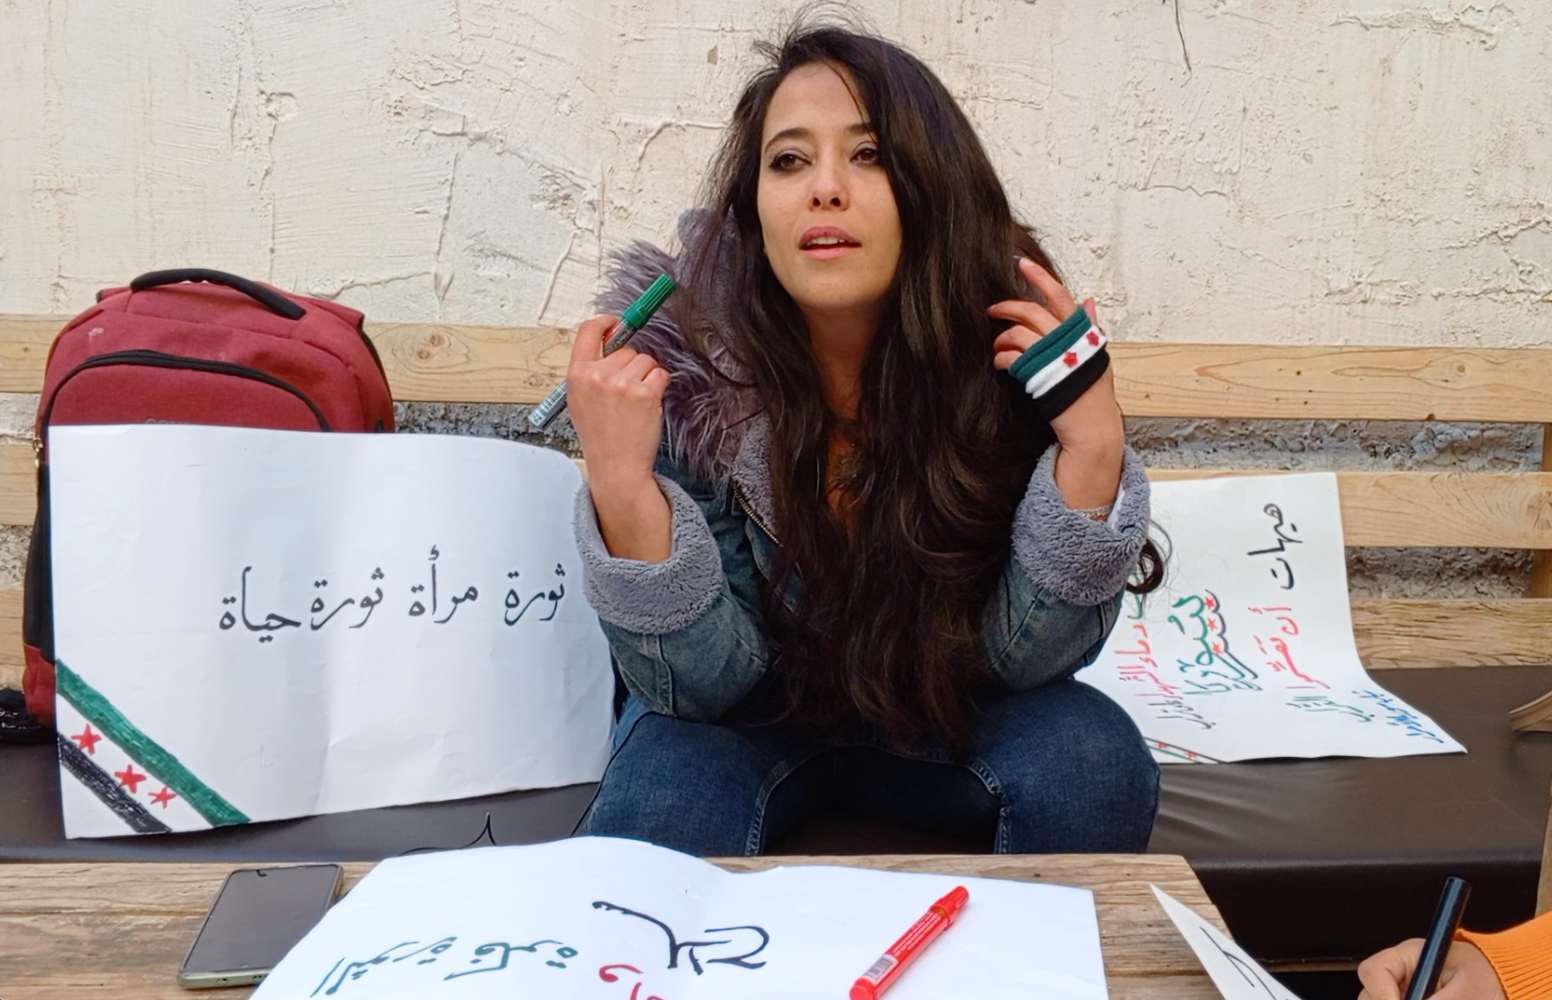 لبنى الباسط كانت تمتهن تدريس الفيزياء تؤكد على أهمية مشاركتها كامرأة في إعادة إحياء الثورة السورية